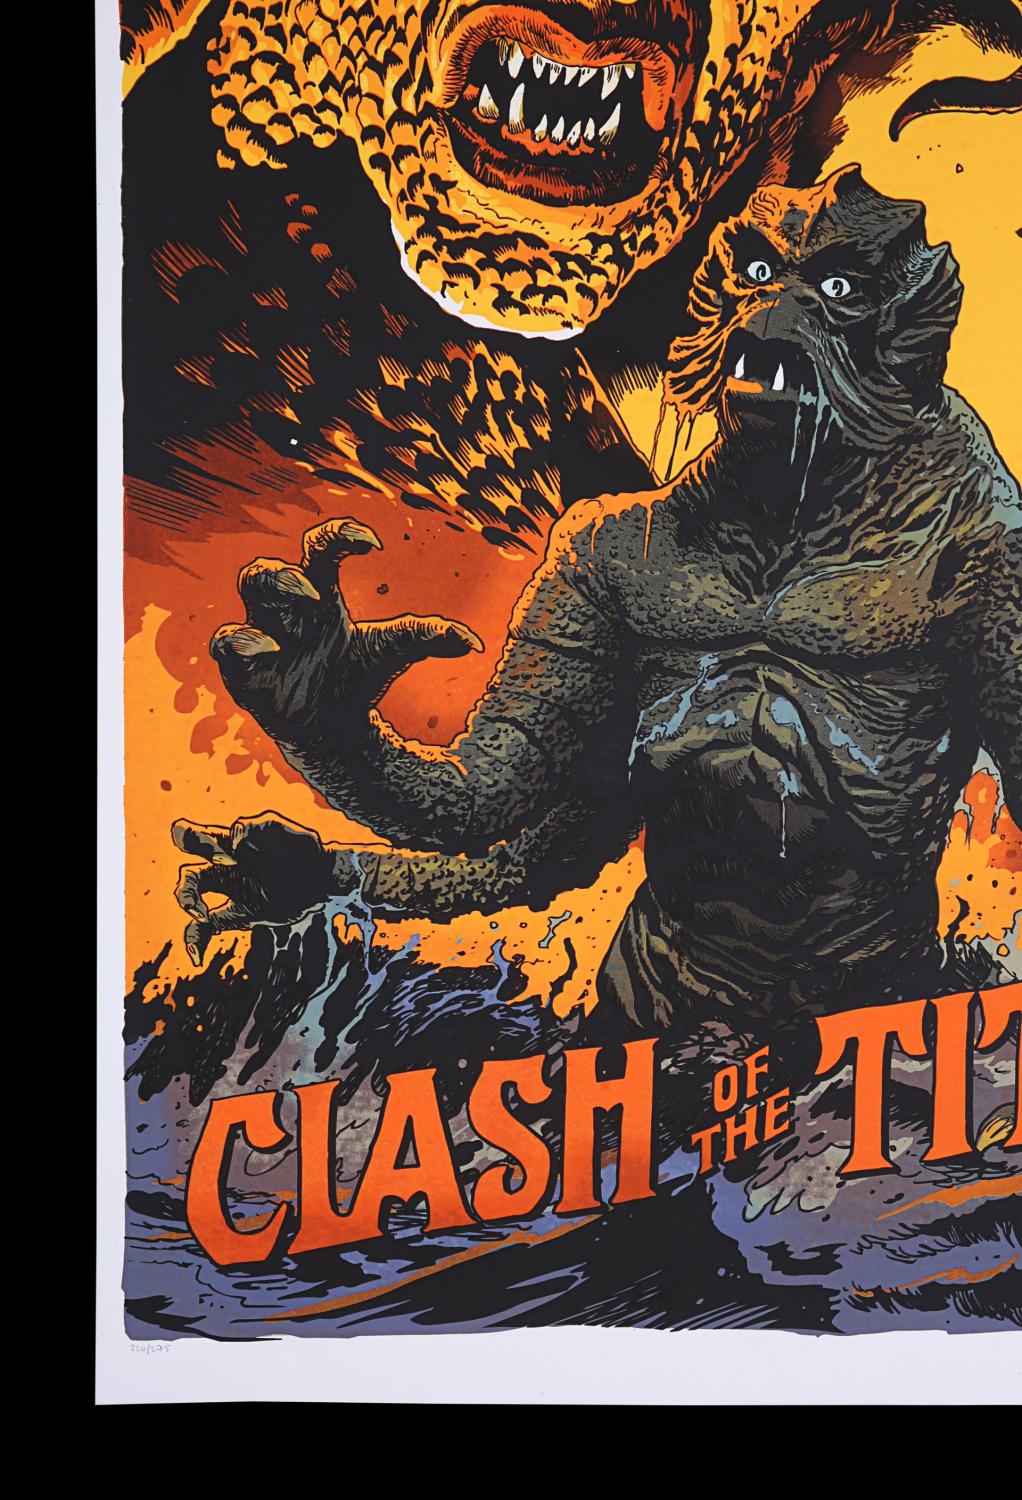 Lot #237 - CLASH OF THE TITANS (1981) - Mondo Poster, 2014